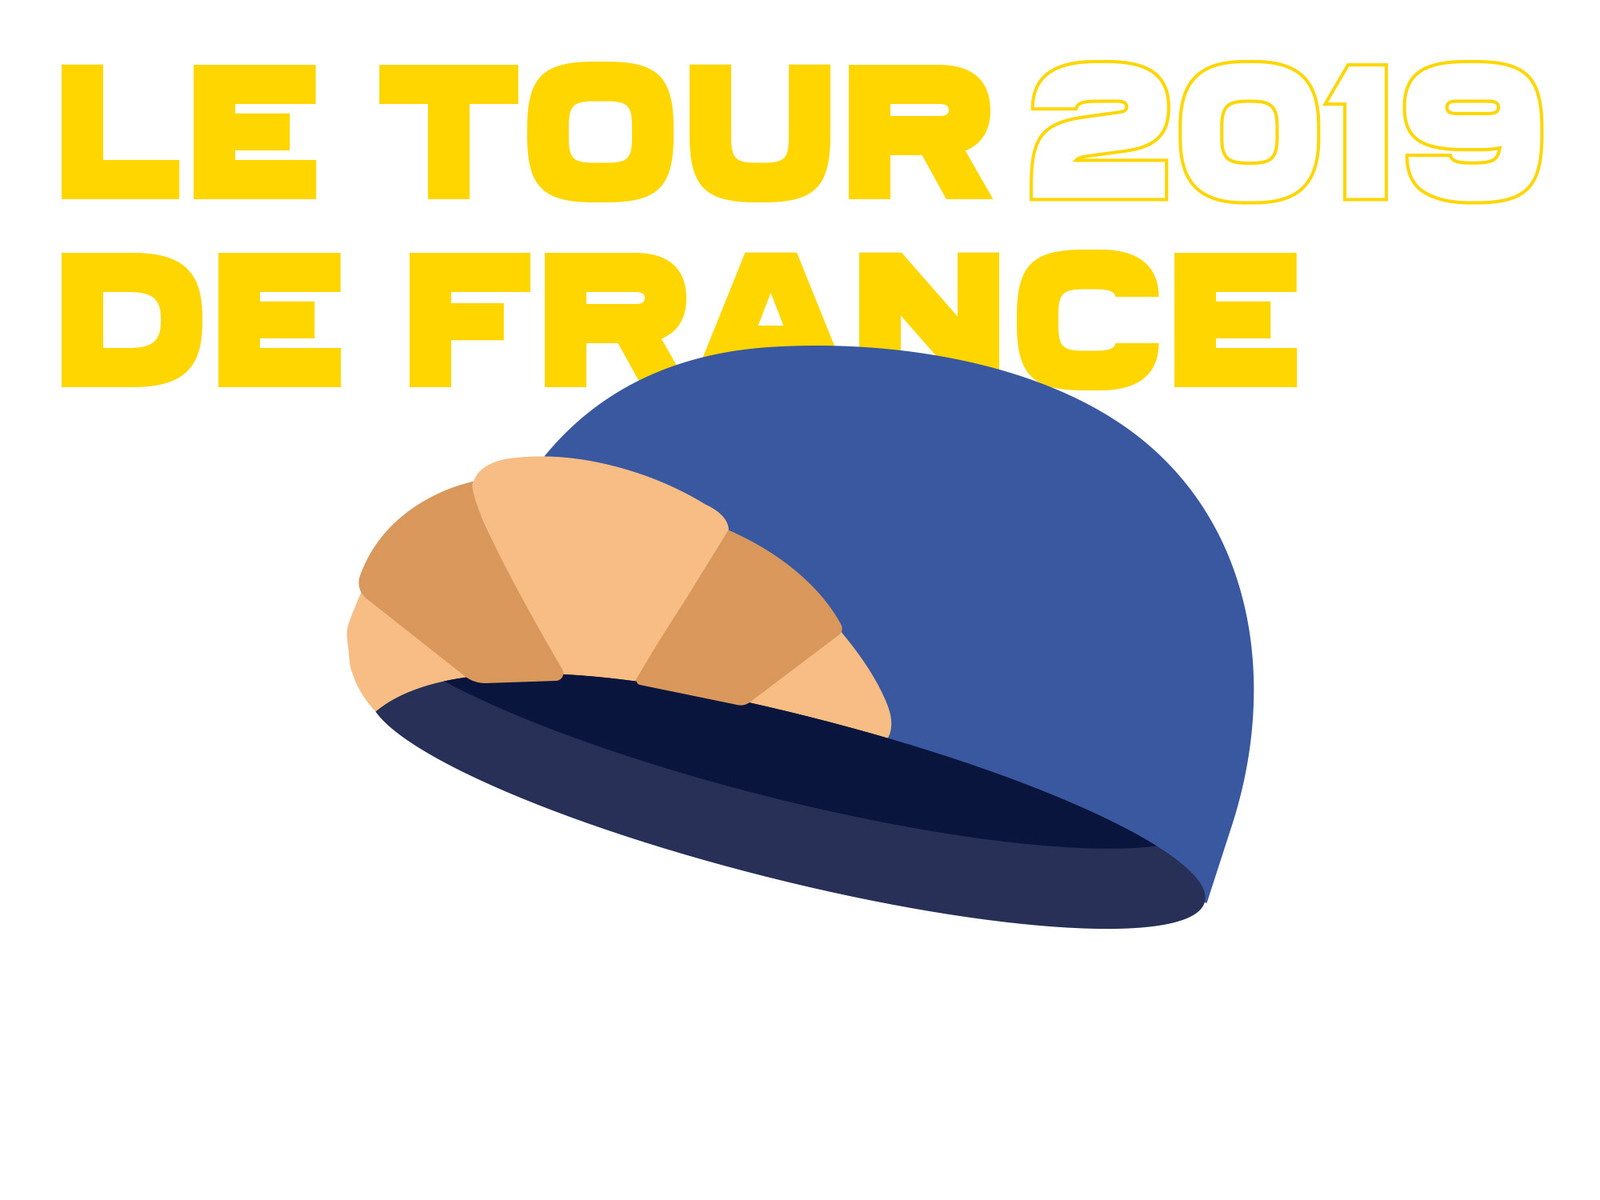 Tour de France 1/2 bike croissant cyclism cyclist france hat illustration minimalist paris sport tour de france